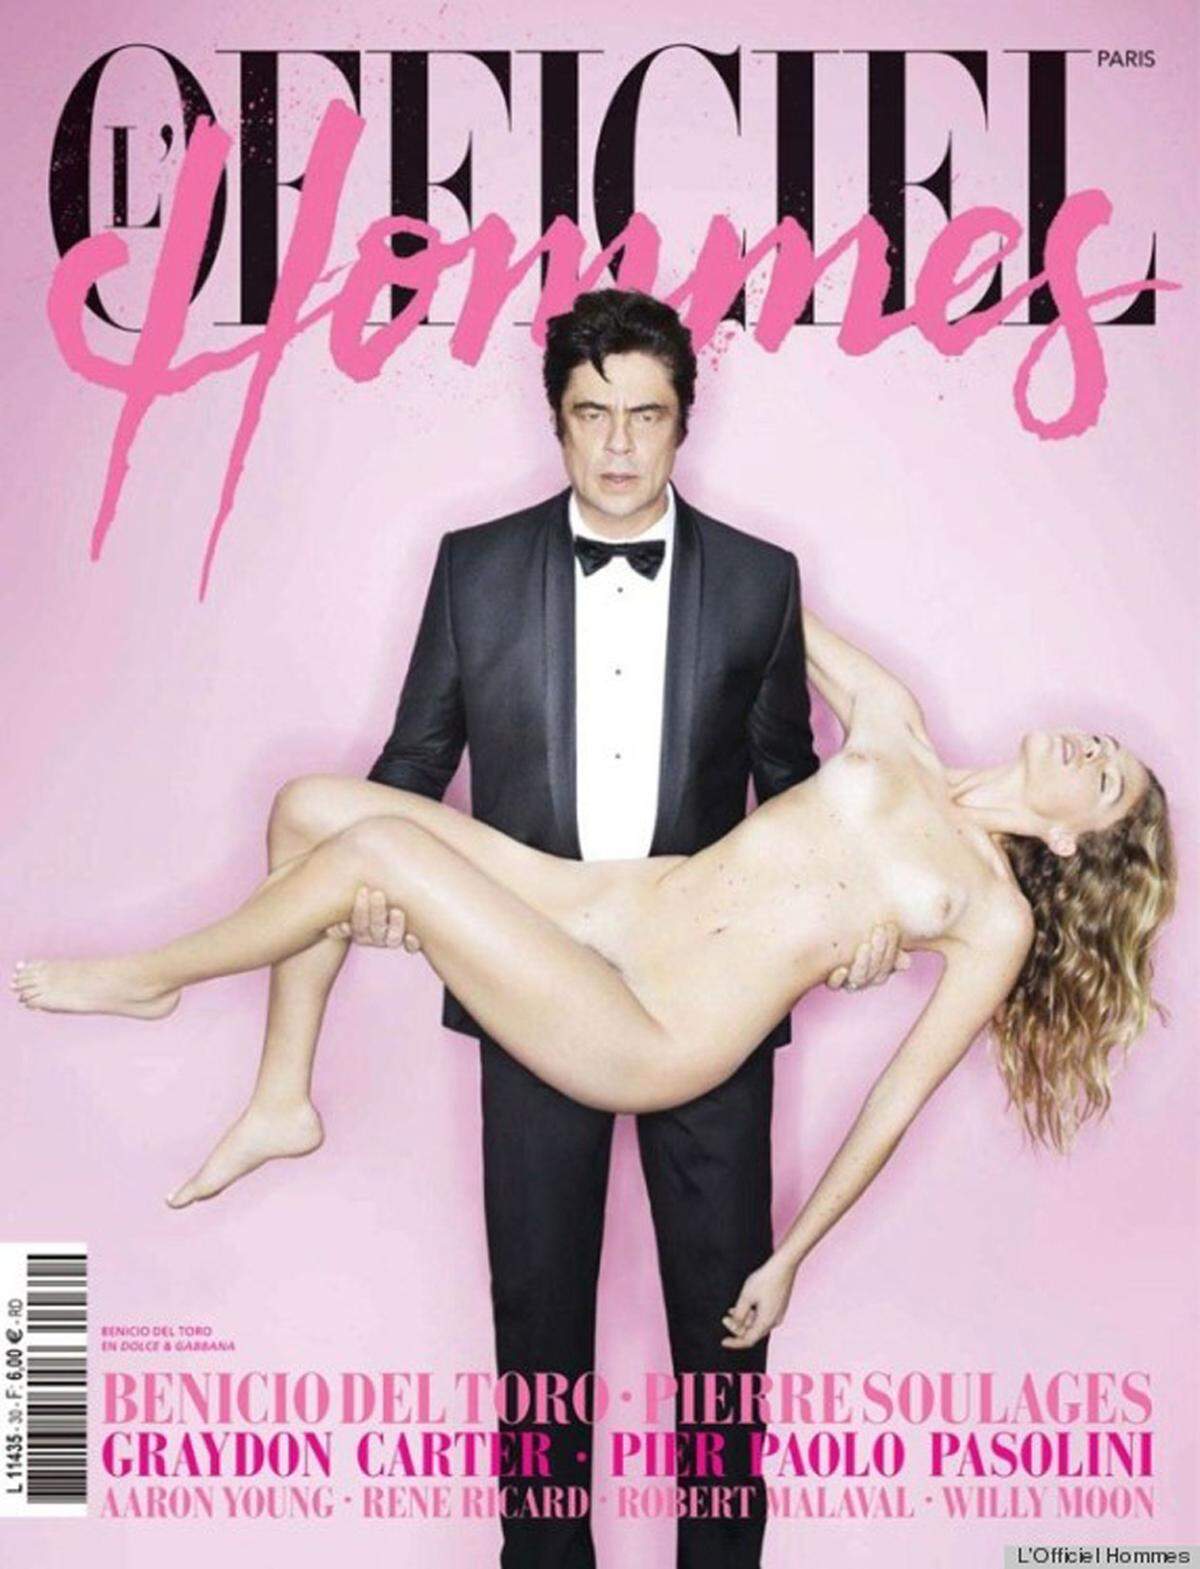 Neben Photoshop-Fehlern sorgten 2012 wieder einige Cover für Aufregung, darunter etwa Schauspieler Benicio del Toro mit einer bewusstlosen und nackten Frau auf dem Cover von L'Officiel Hommes. Nachlese: Skandal-Cover